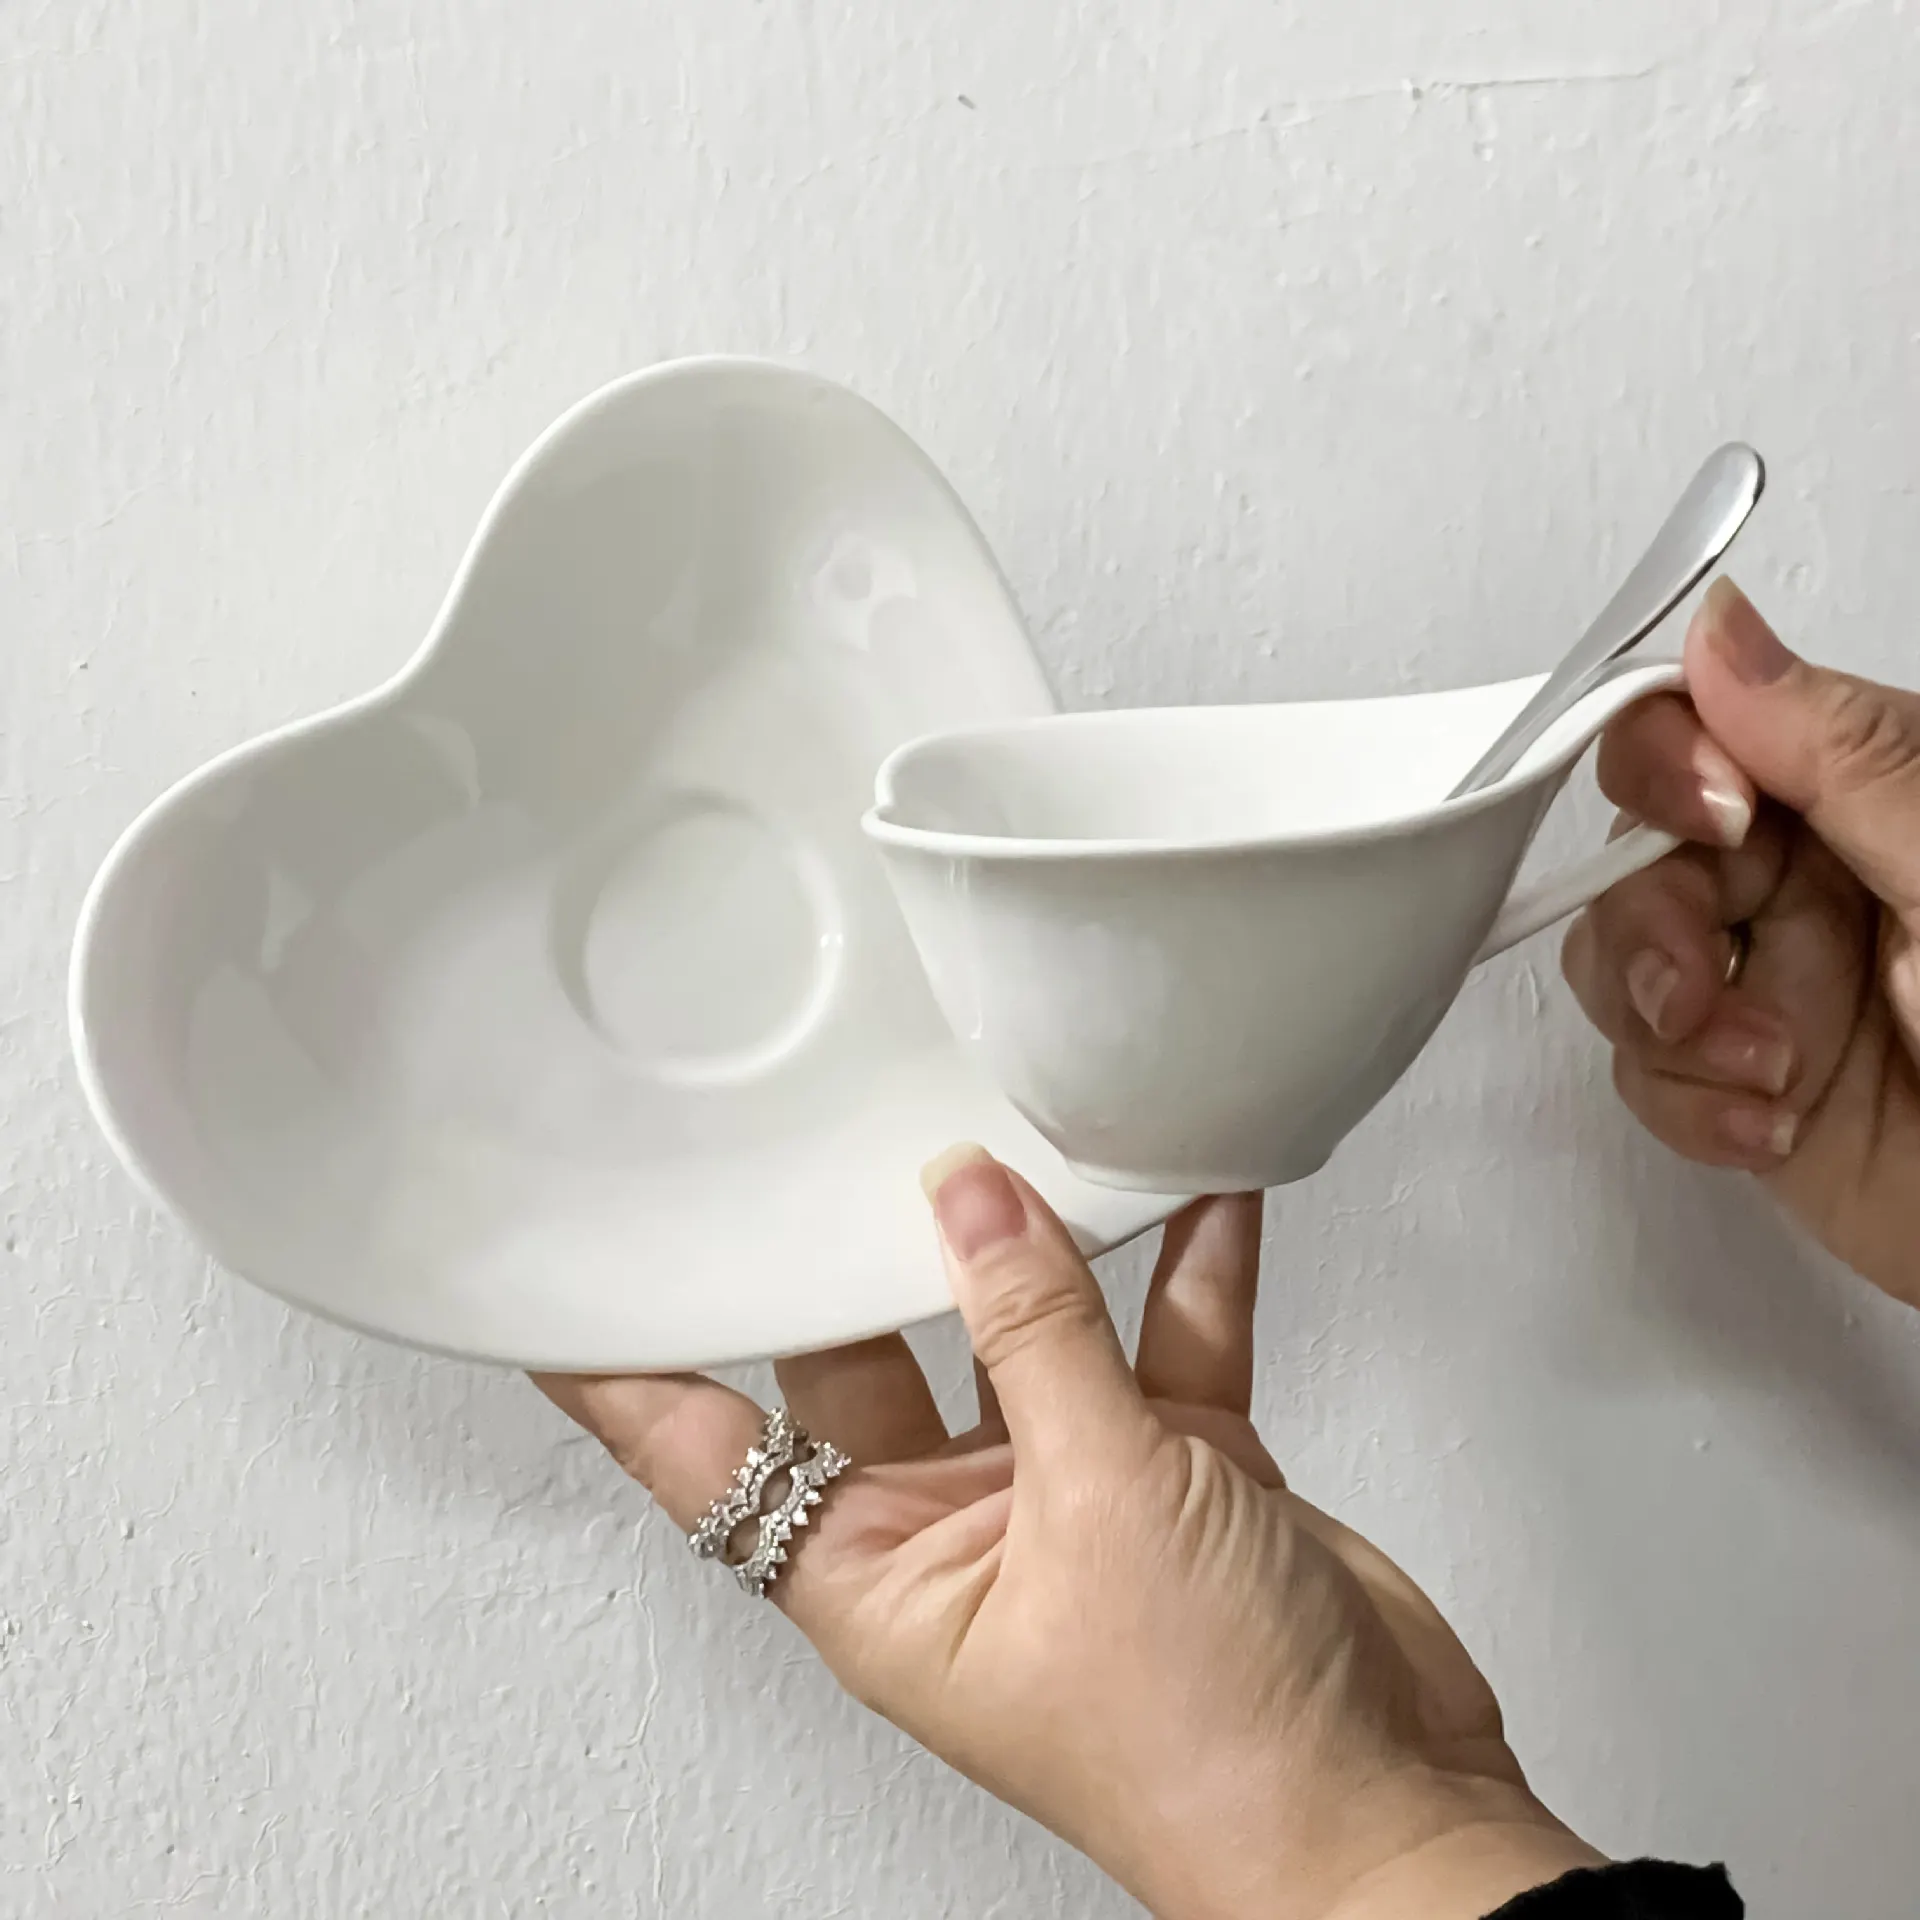 러브 하트 모양 세라믹 티 컵 & 접시 세트 크리에이티브 미니 디자인 티 컵 선물 커피 컵 세트